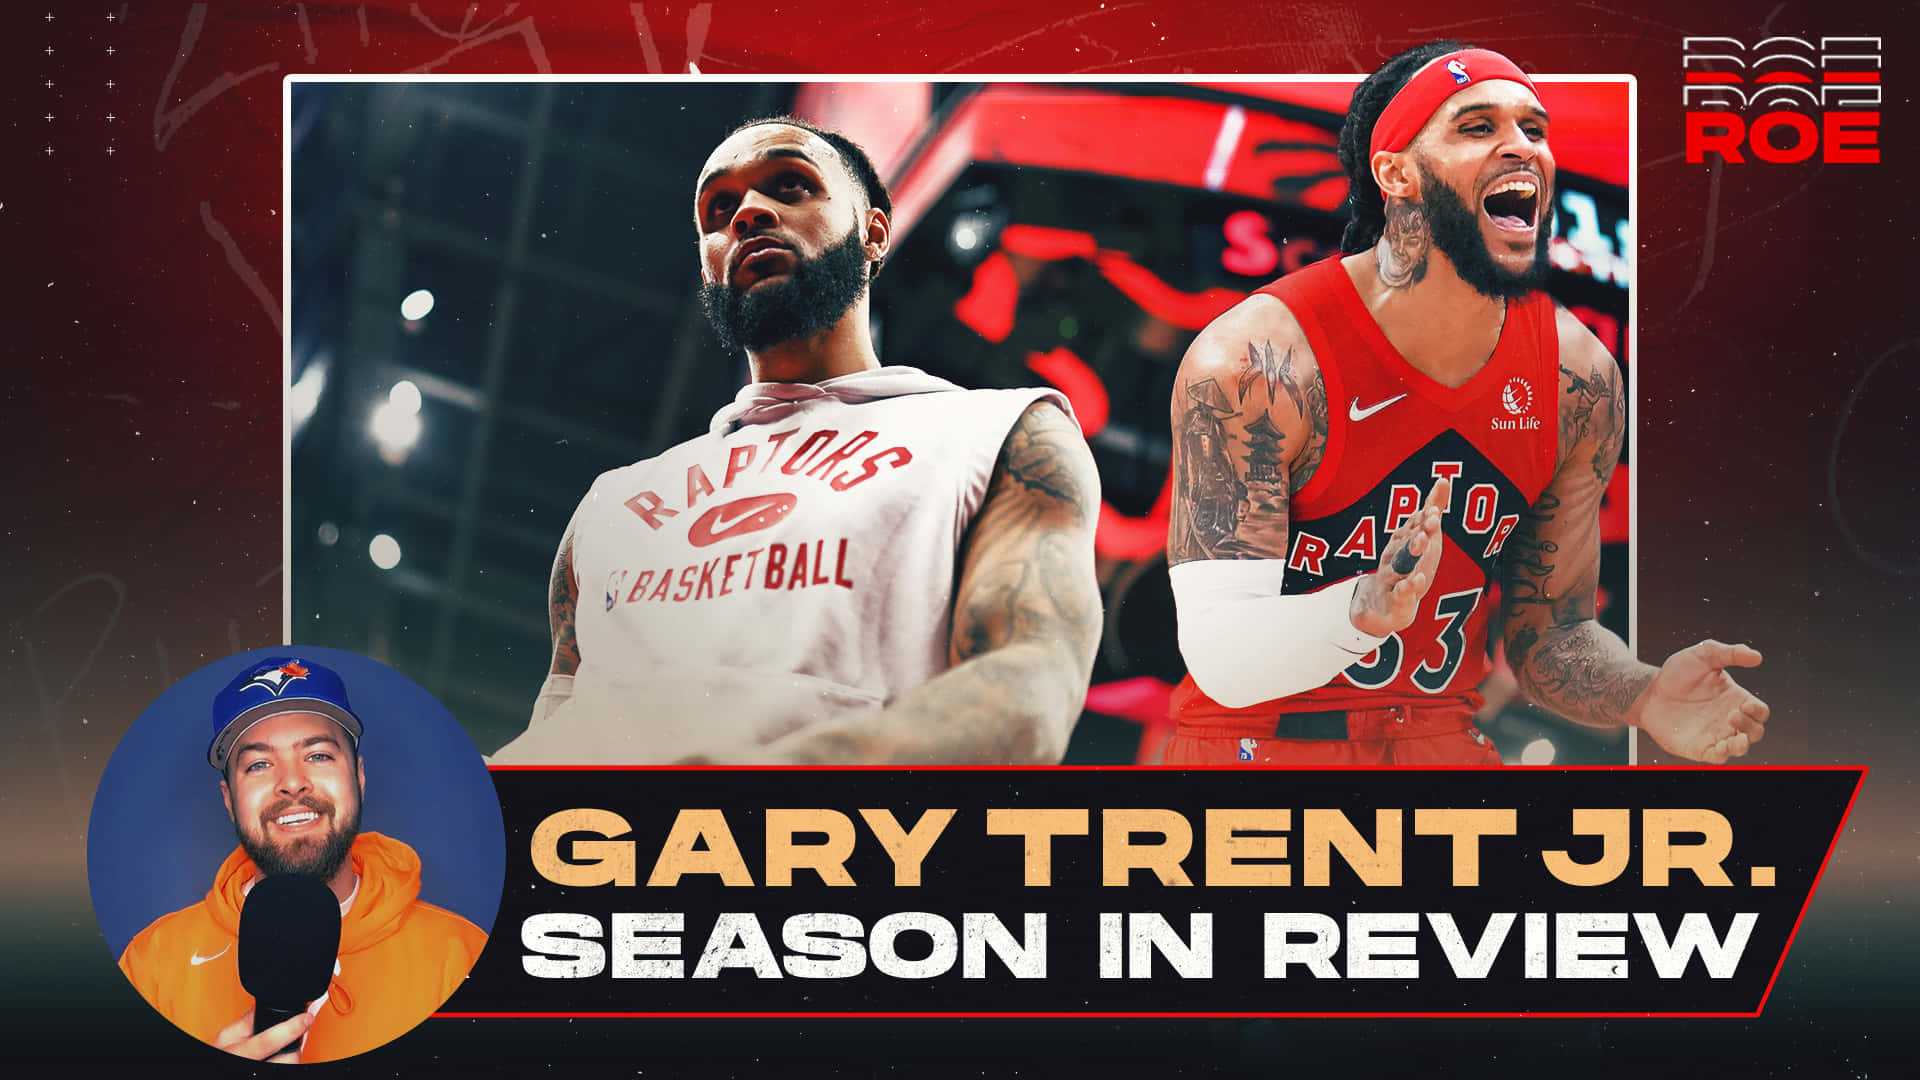 Gary Trent Jr Season In Review Wallpaper